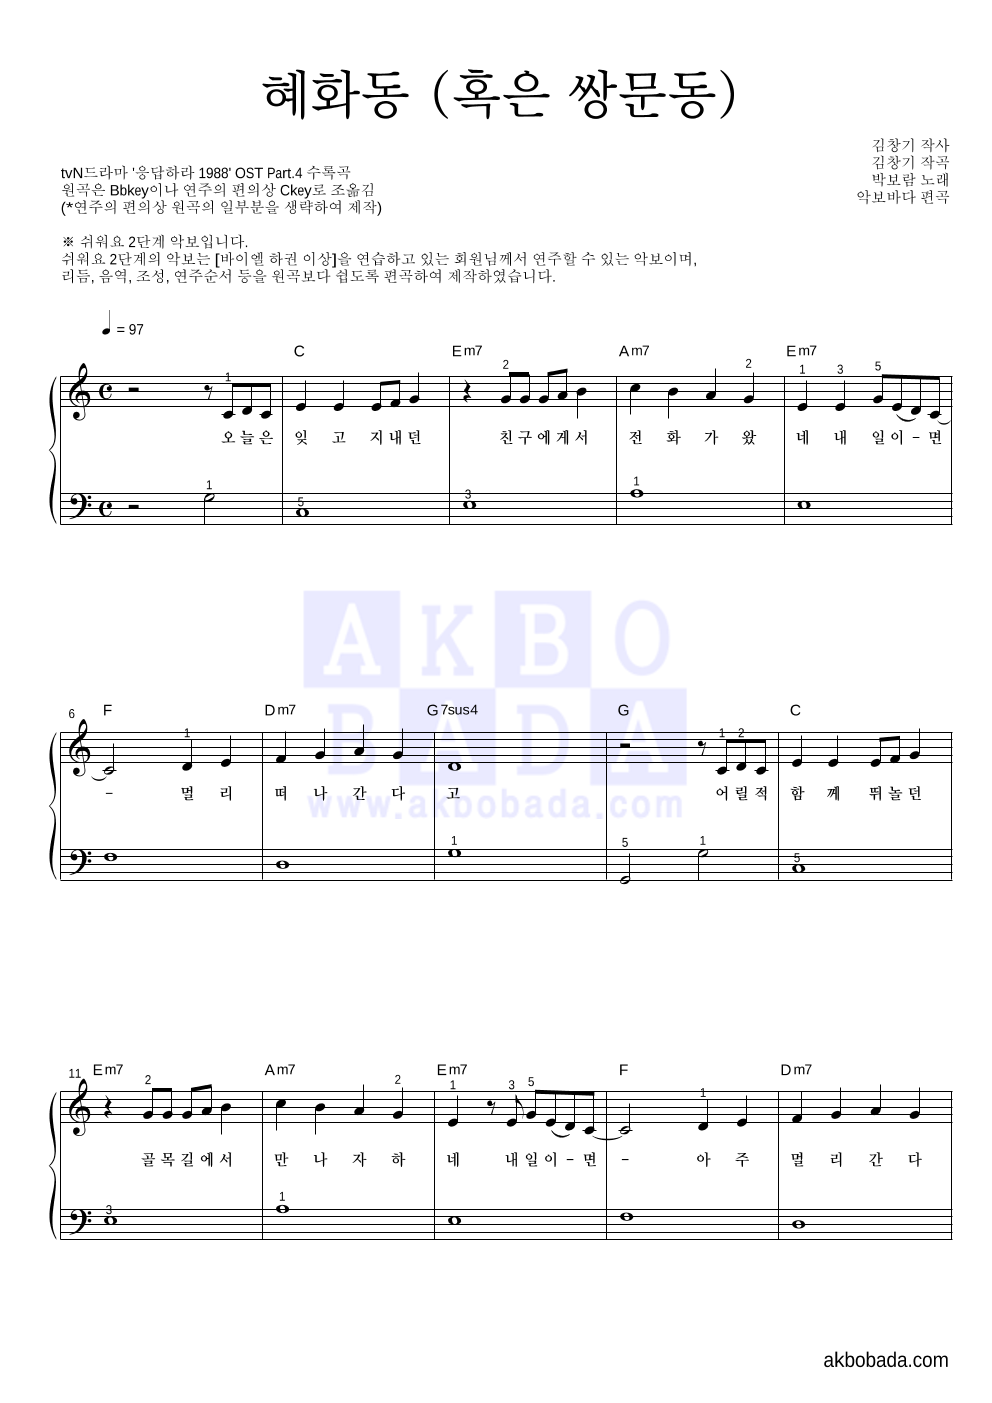 박보람 - 혜화동 (혹은 쌍문동) 피아노2단-쉬워요 악보 